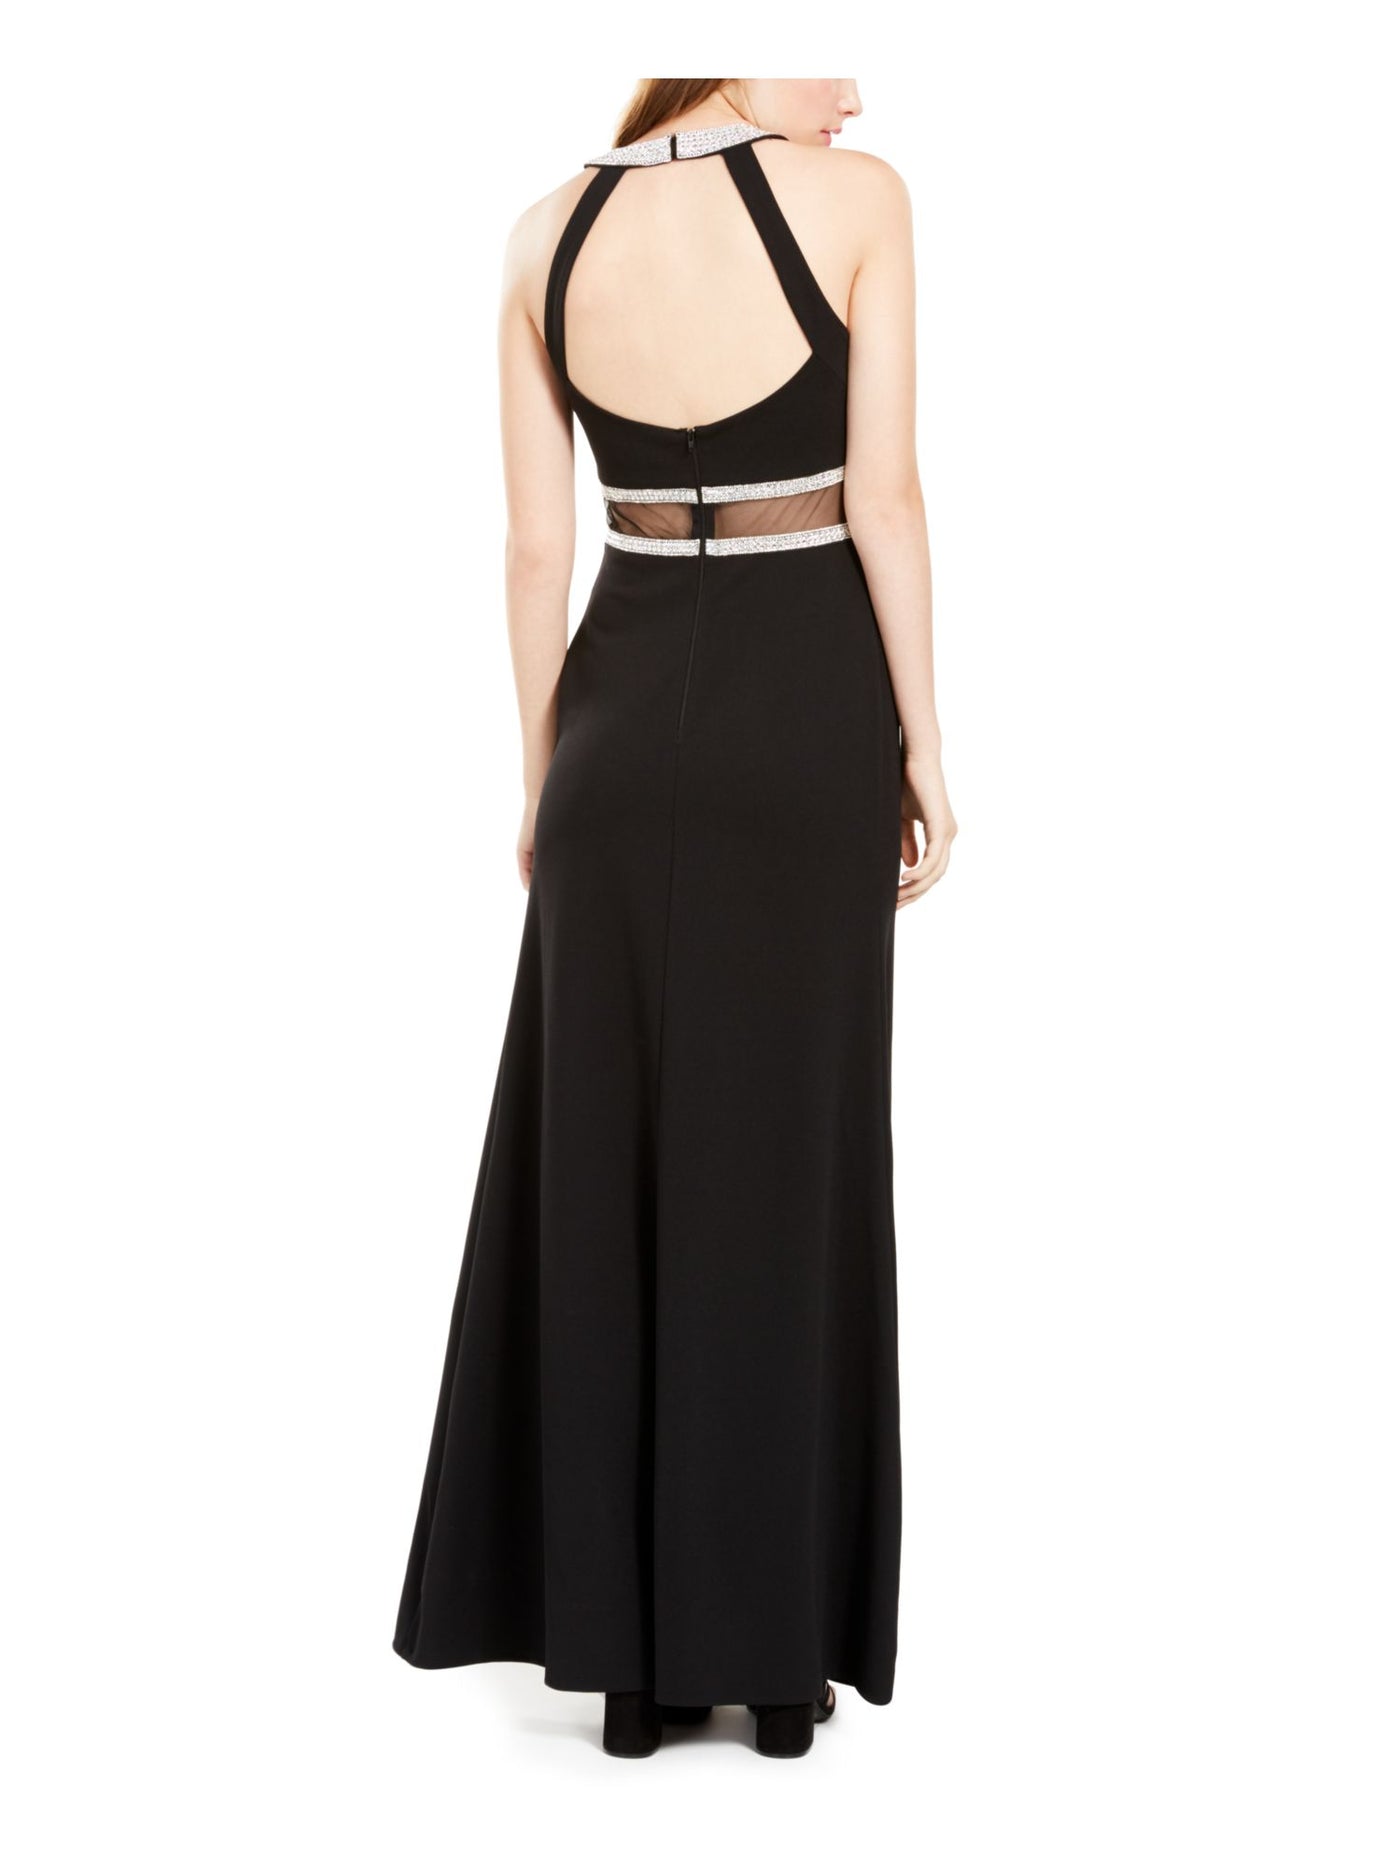 SEQUIN HEARTS Womens Black Slitted Sleeveless Halter Full-Length Formal Fit + Flare Dress Juniors 5